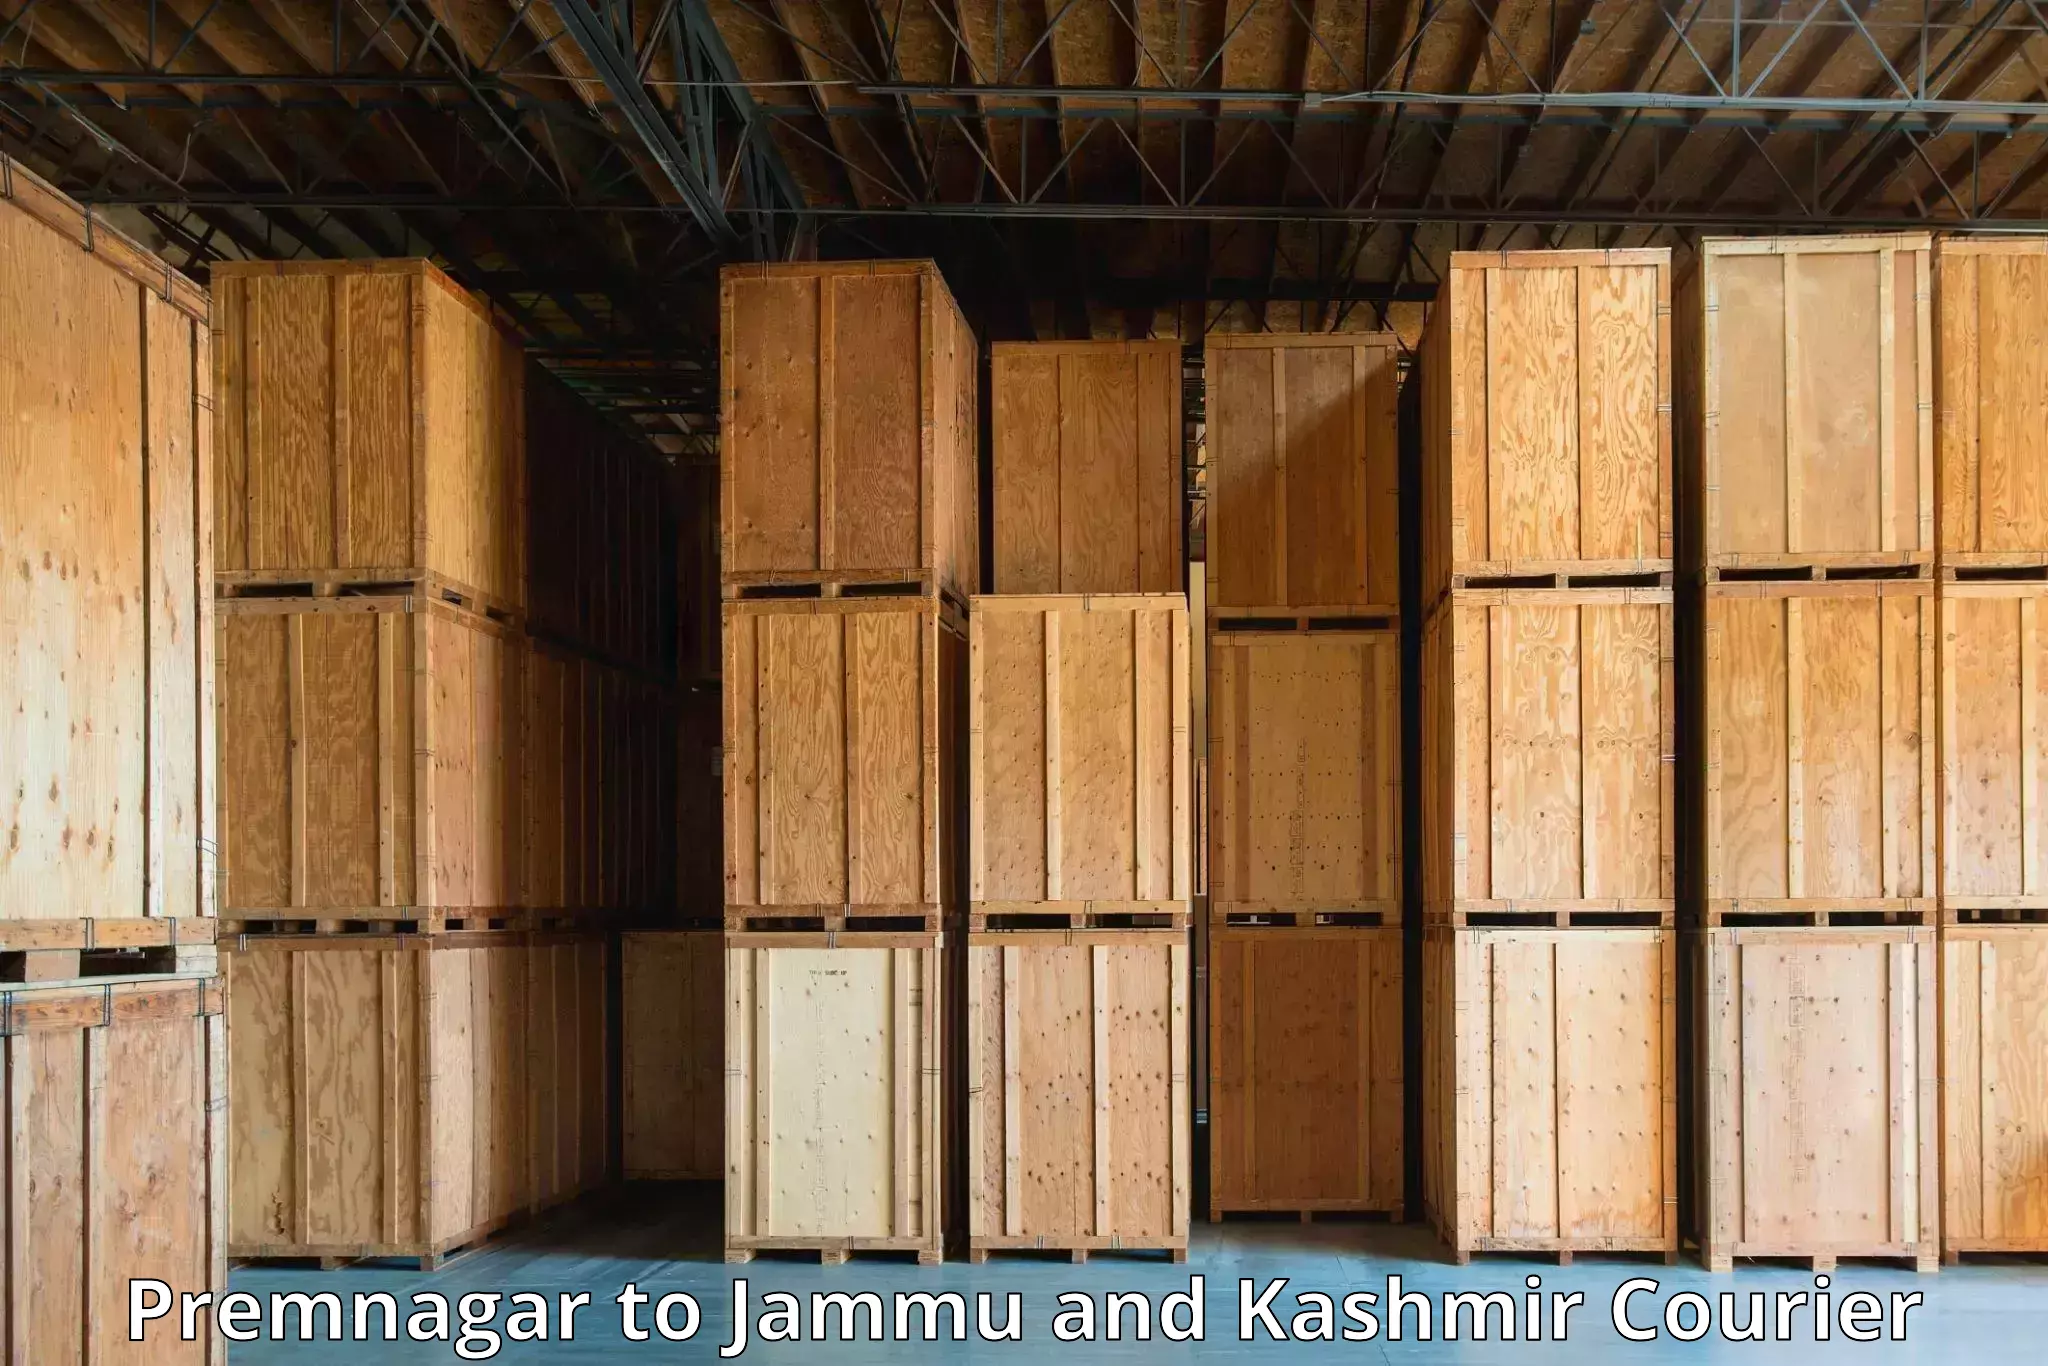 Efficient logistics management Premnagar to Kishtwar